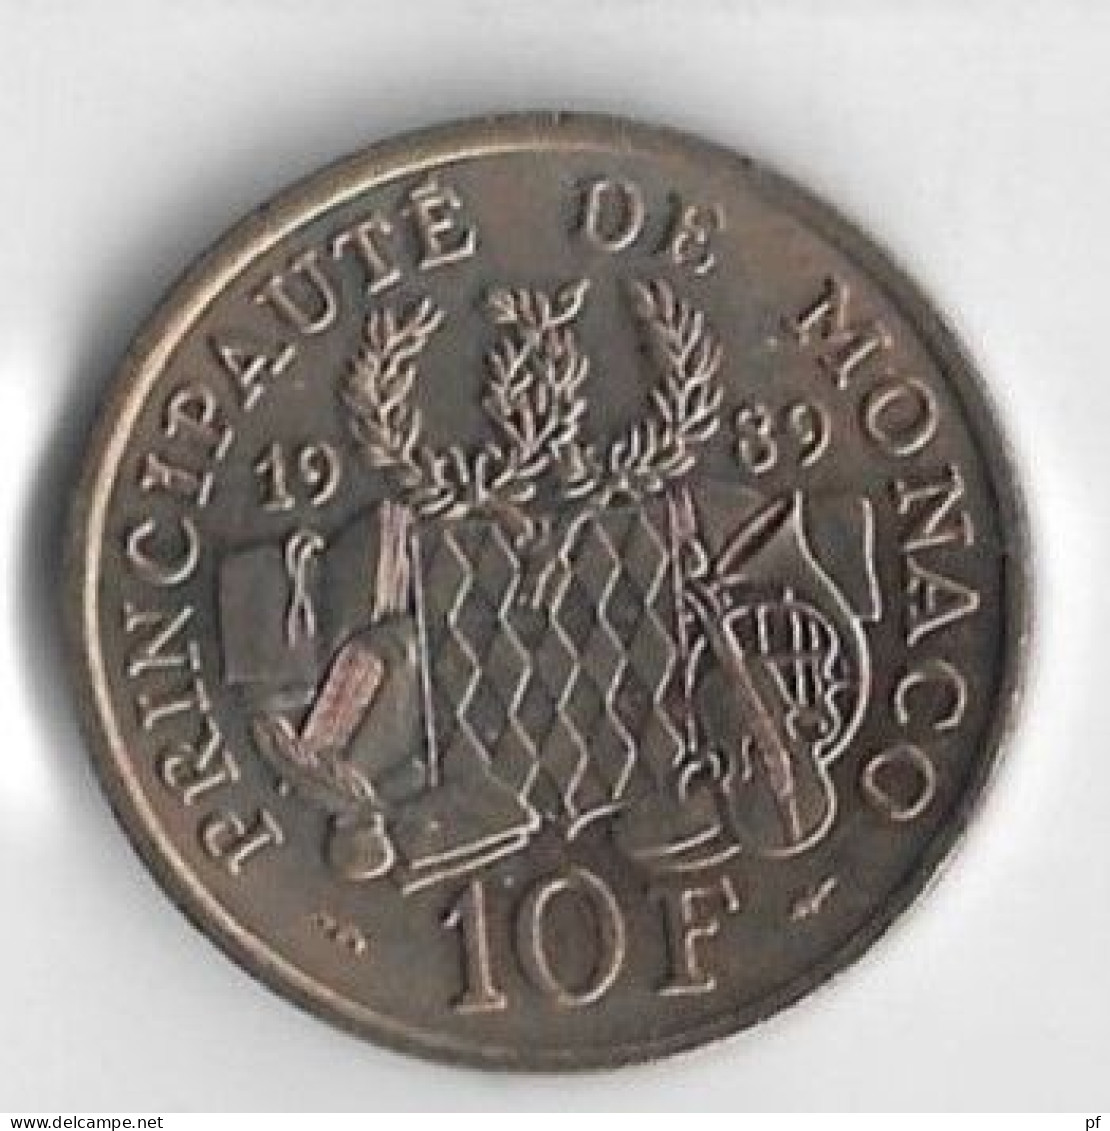 Monaco 10 Francs 1989   Fondation Prince Pierre 1895 -1964  UNC - FDC - Uncirculated